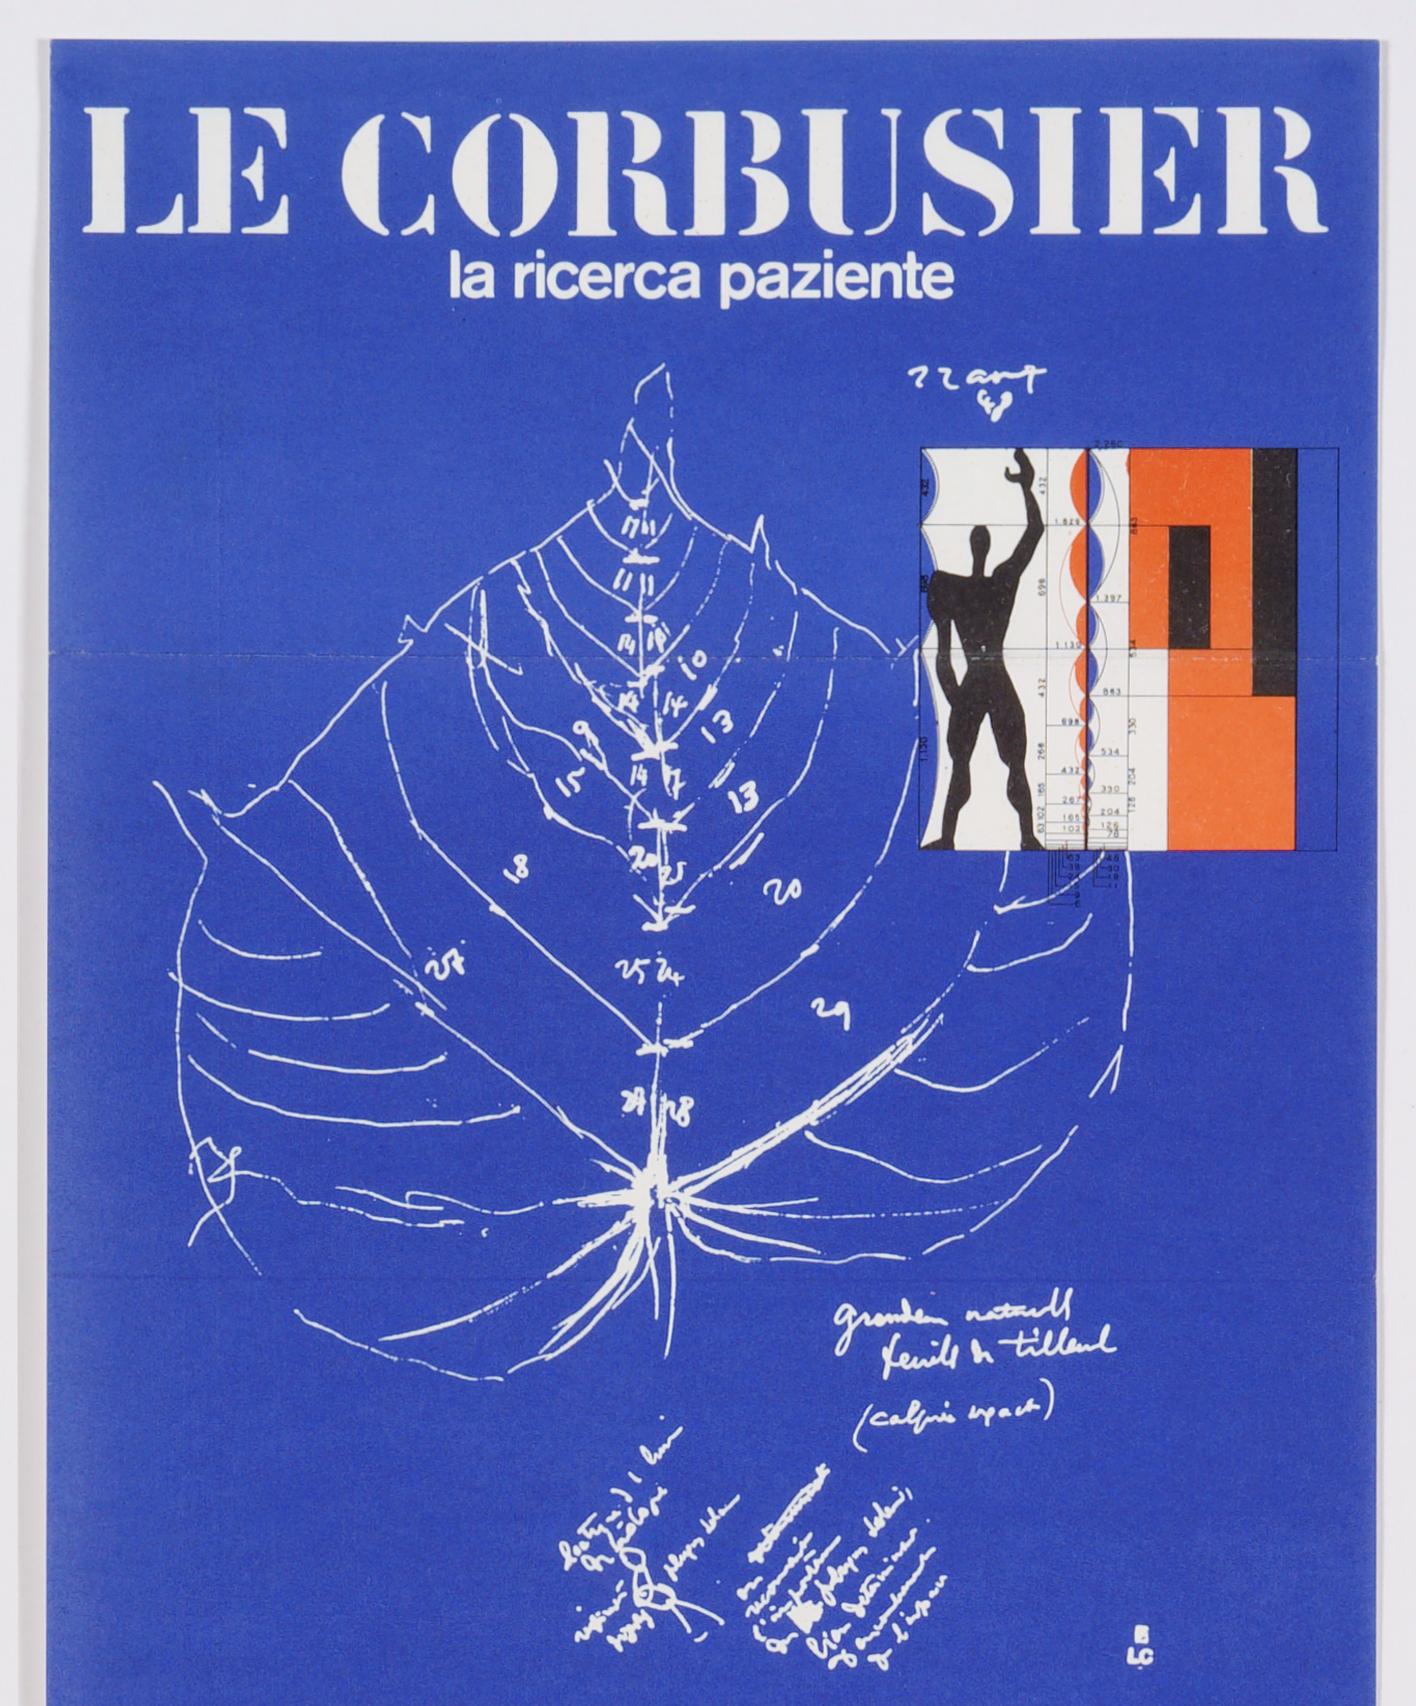 Le Corbusier, « La ricerza paziente », affiche d'origine d'exposition suisse vintage  - Print de Unknown